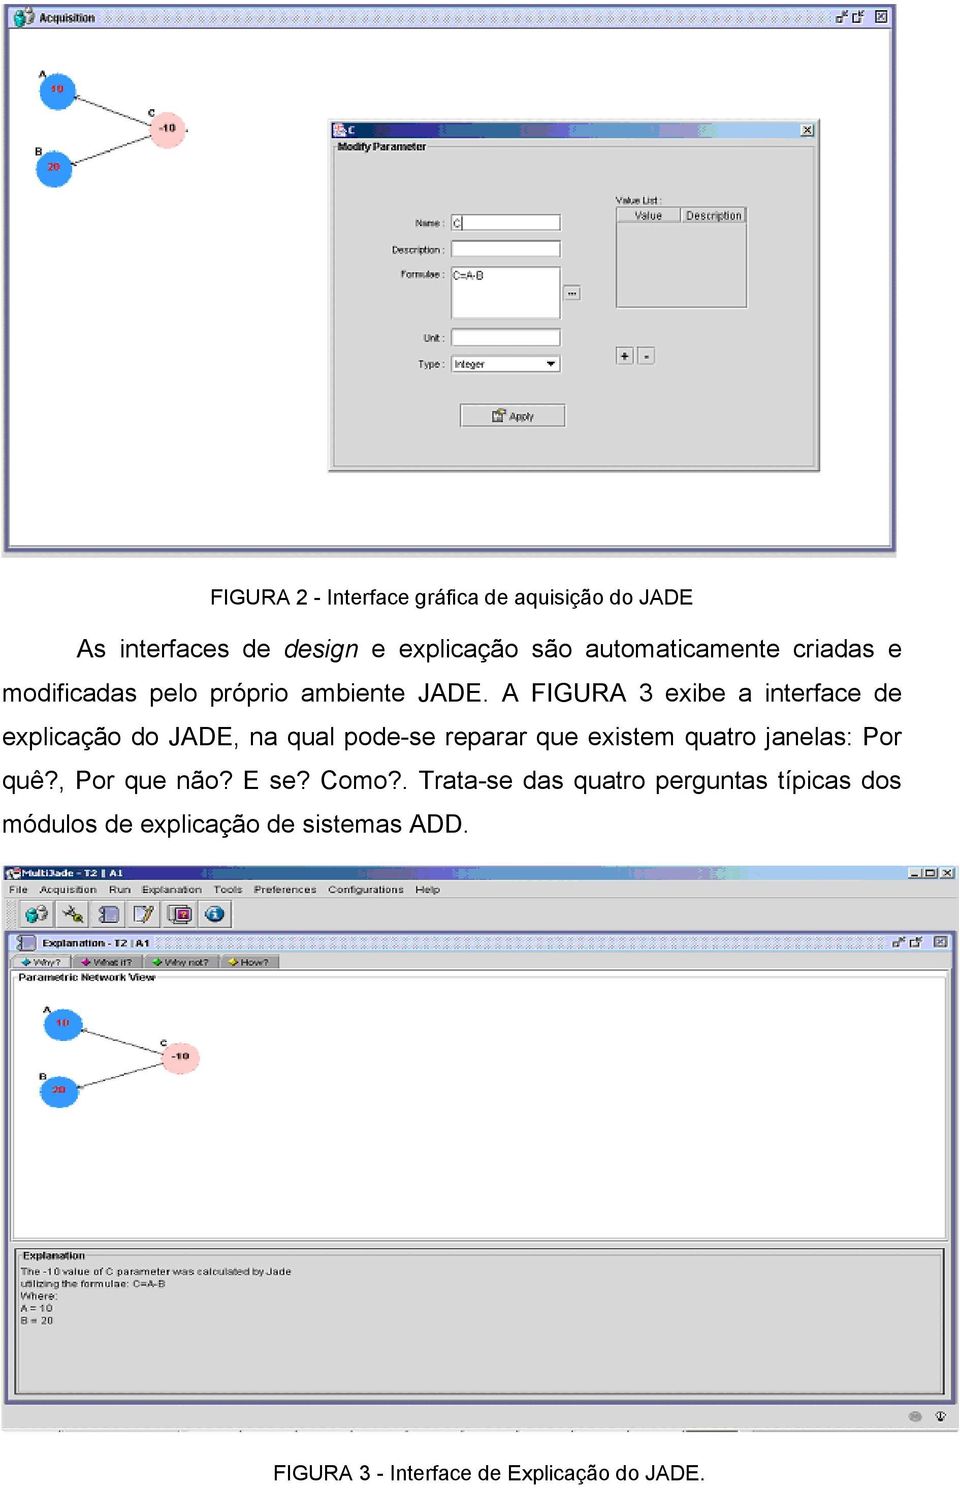 A FIGURA 3 exibe a interface de explicação do JADE, na qual pode-se reparar que existem quatro janelas: